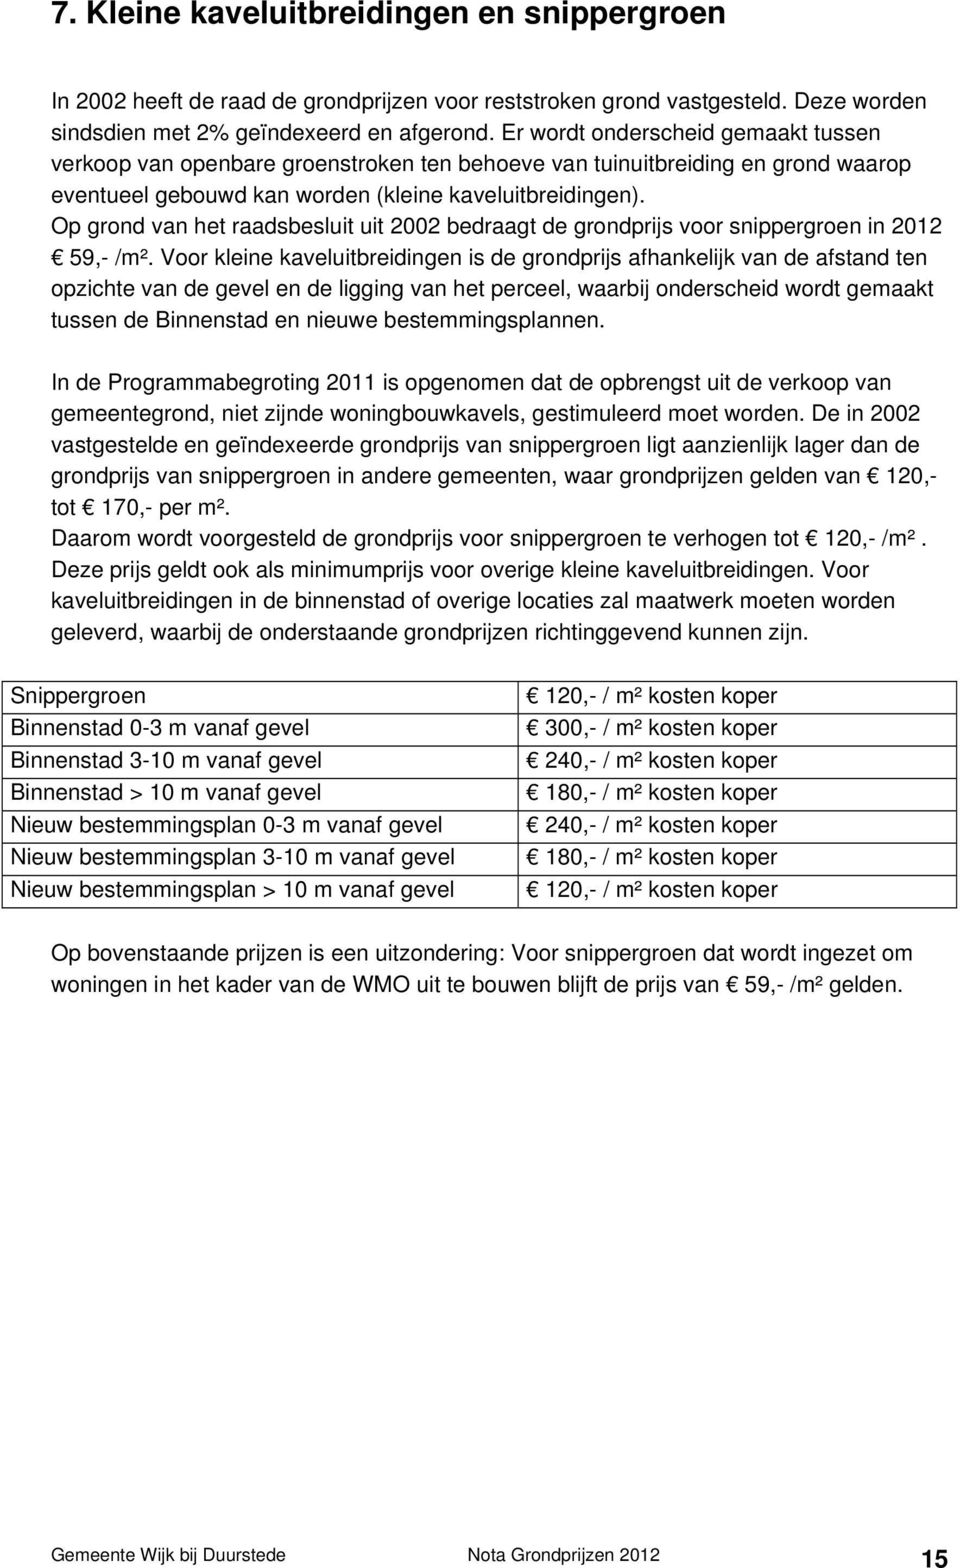 Op grond van het raadsbesluit uit 2002 bedraagt de grondprijs voor snippergroen in 2012 59,- /m².